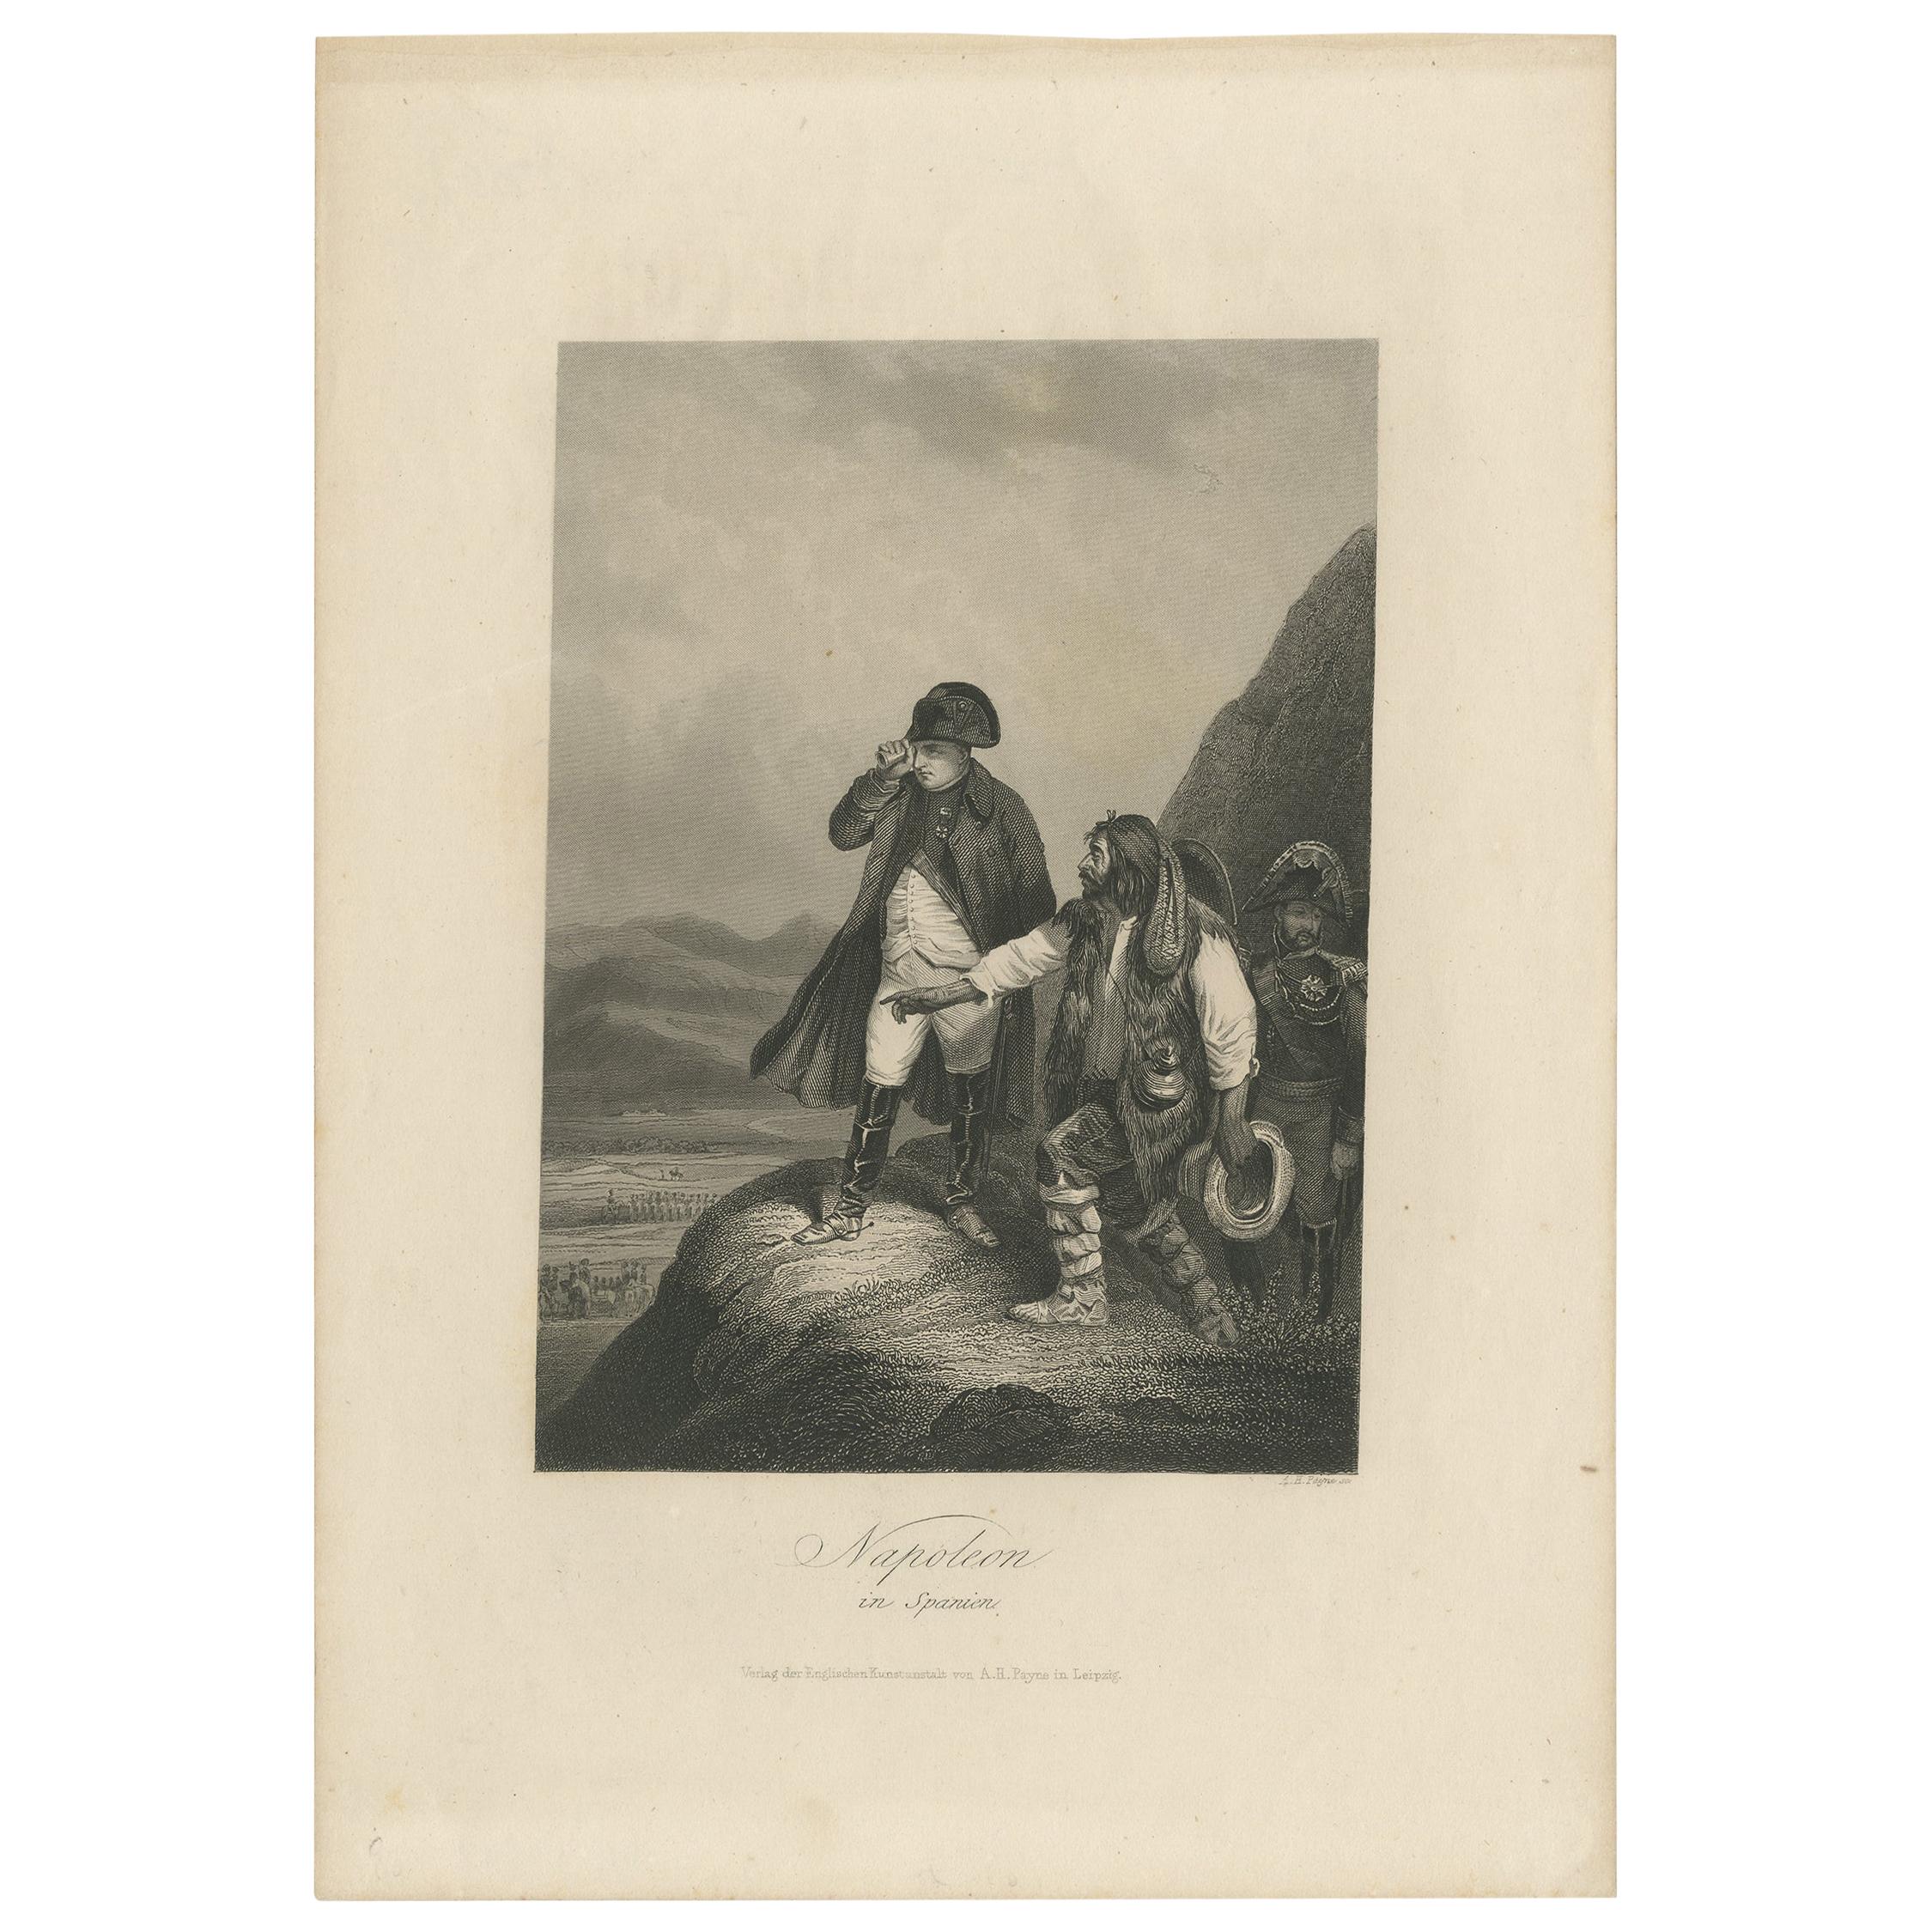 Antiker Druck von Napolon Bonaparte in Spanien von Payne, um 1860